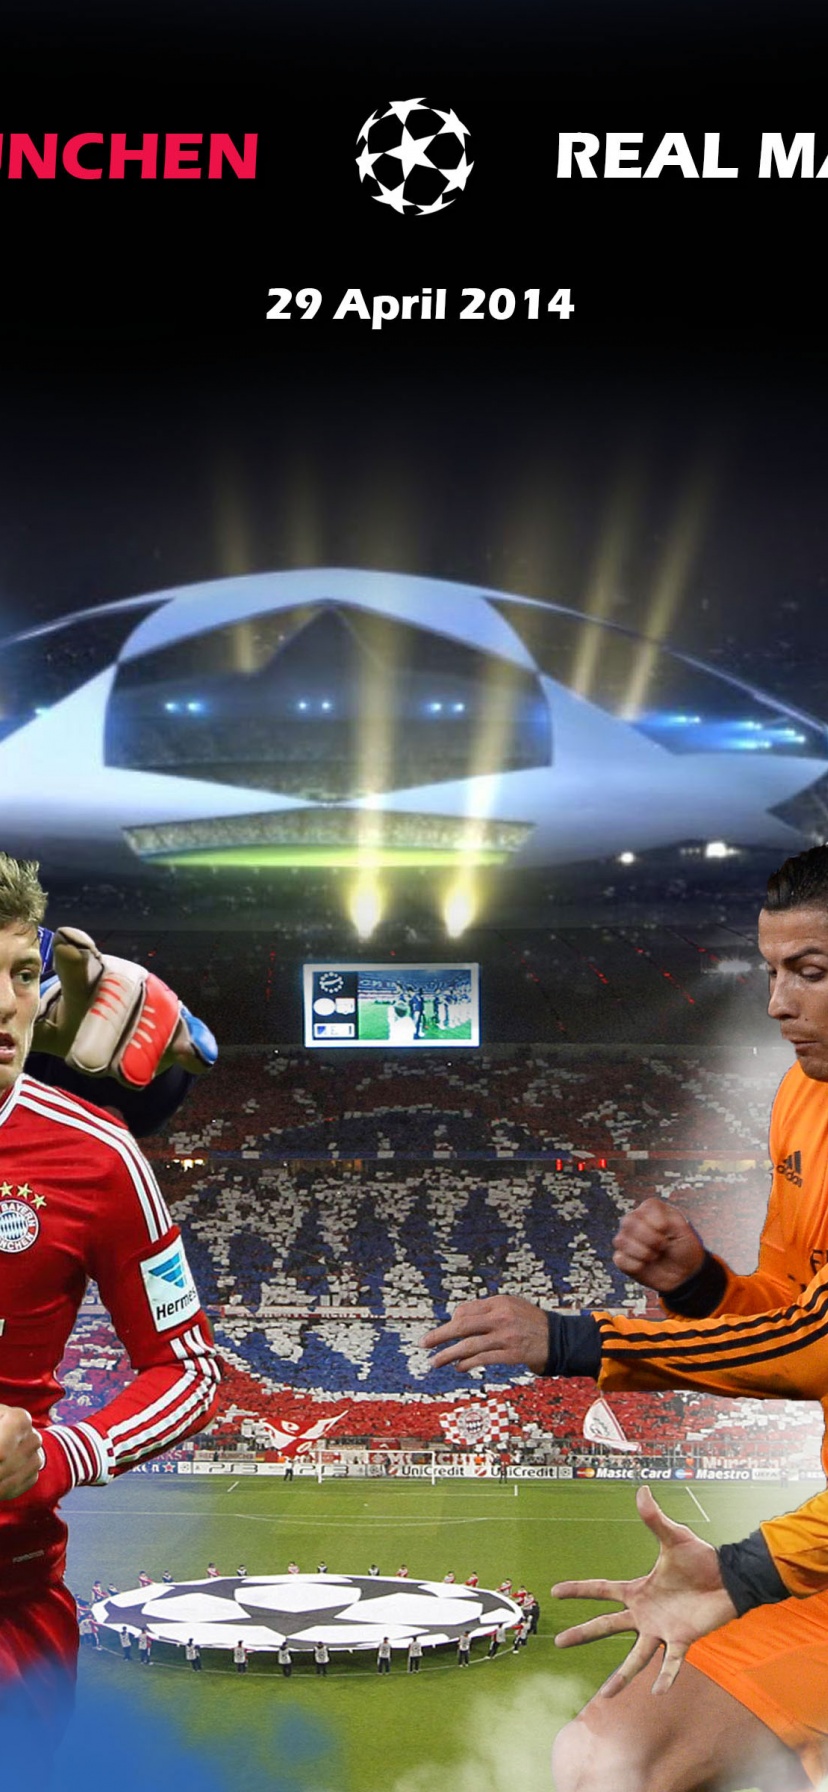 FC Bayern Munich Vs Real Madrid